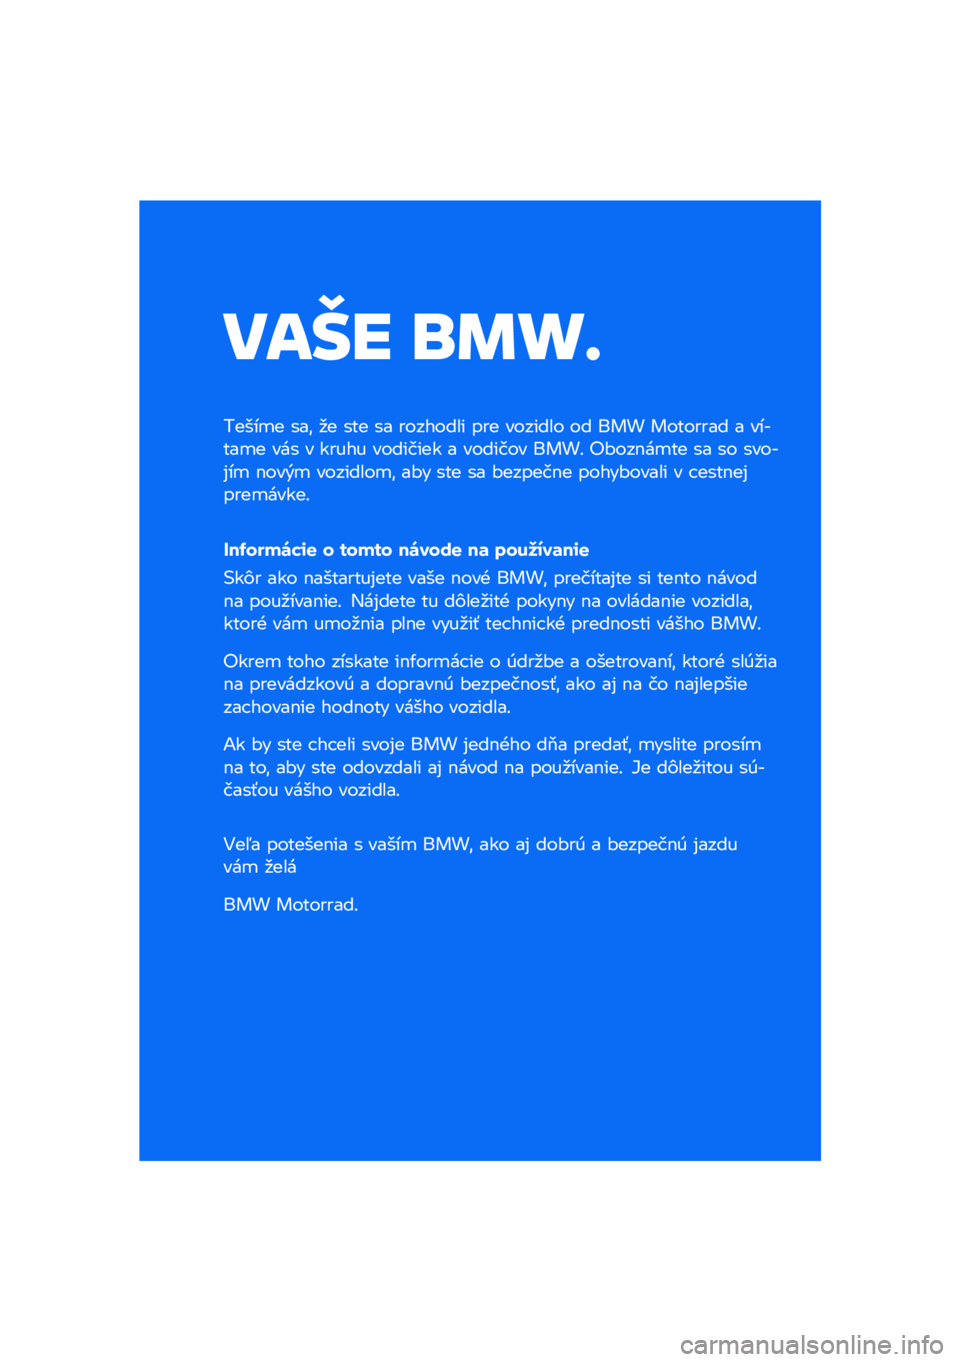 BMW MOTORRAD R NINE T SCRAMBLER 2021  Návod na používanie (in Slovak) ���� �\b�	�
�
�����
� ���\f �
� ��� �� �������� ��� ������� �� ��� �������� � ������
� ��� � ����� �������� � ������� �